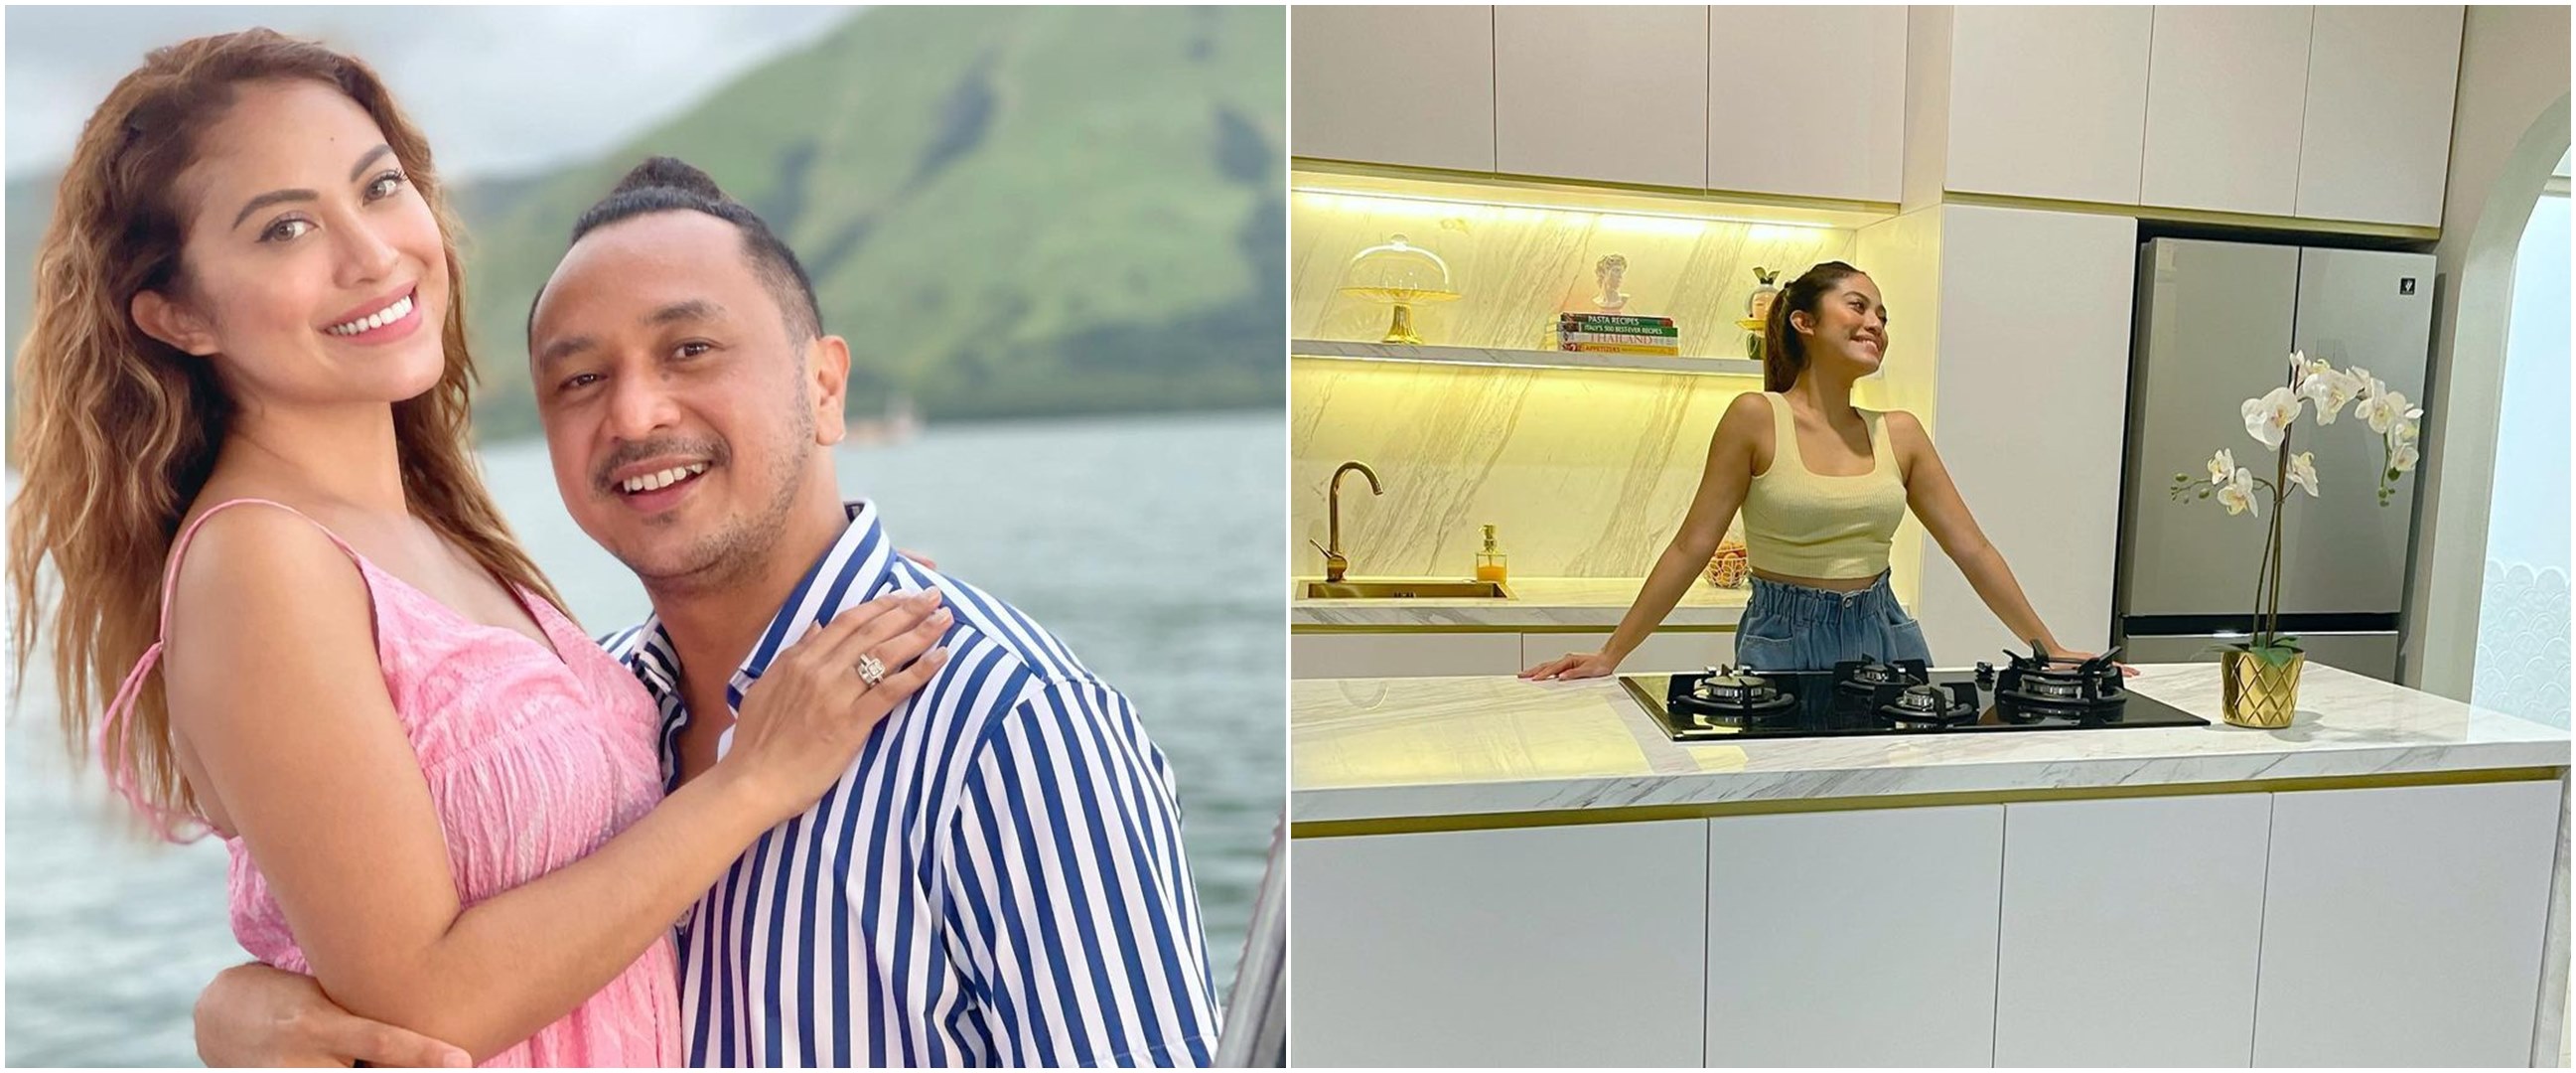 7 Penampakan dapur baru Giring eks Nidji, kado ulang tahun untuk istri